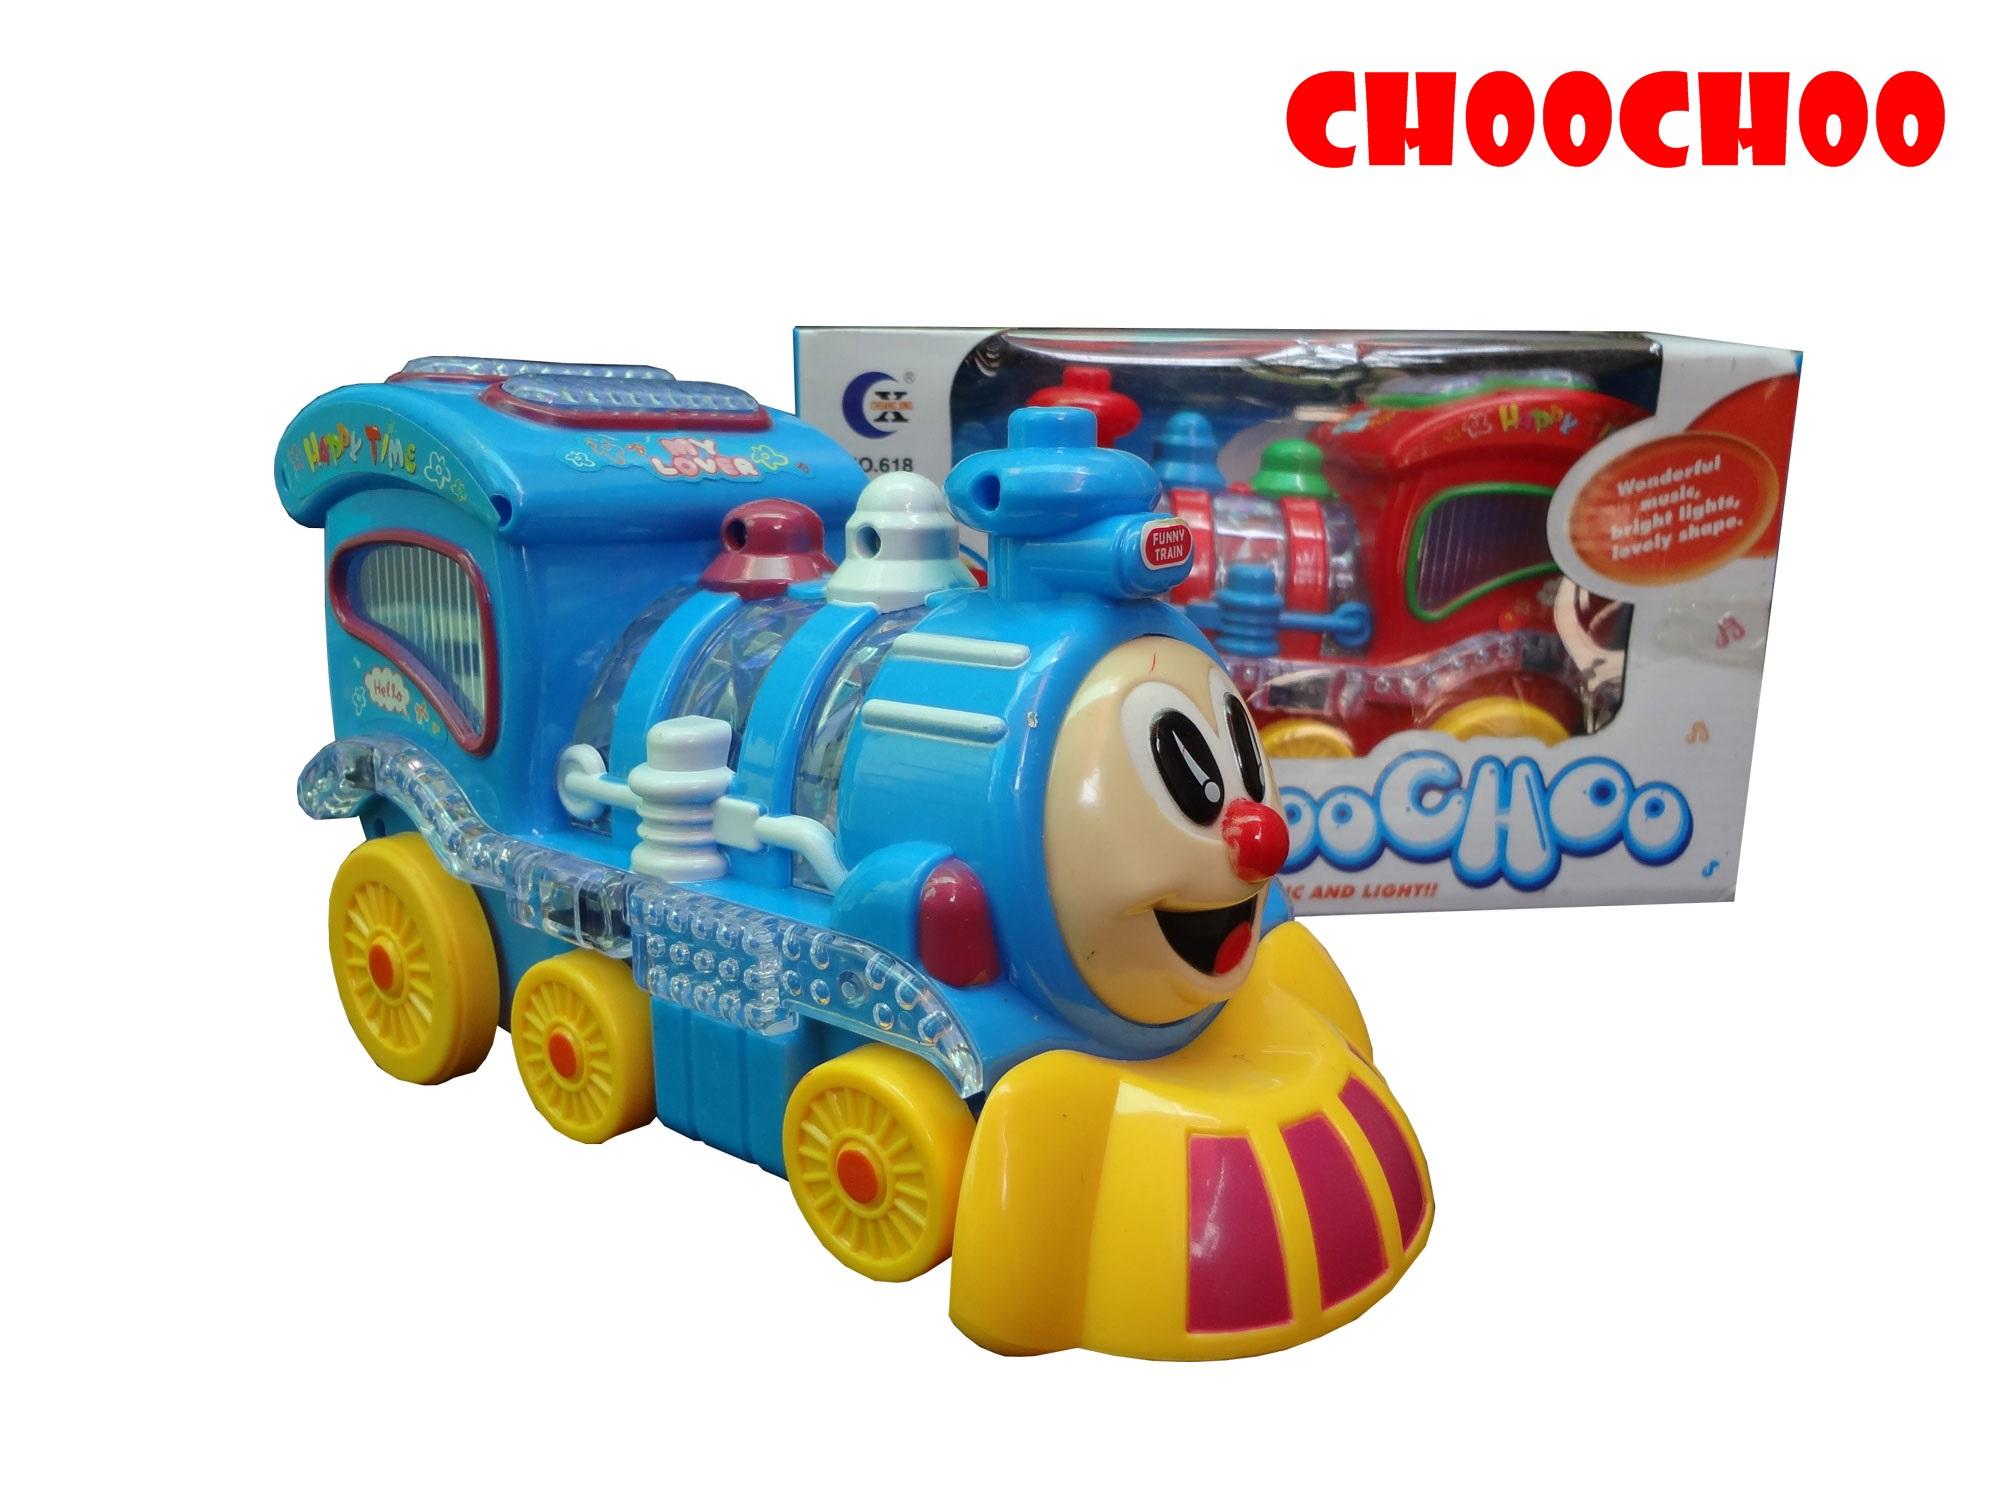 SP Toys รถไฟโทมัส CHOOCHOO ใส่ถ่าน วิ่ง ชน-ถอย มีเสียง มีไฟ